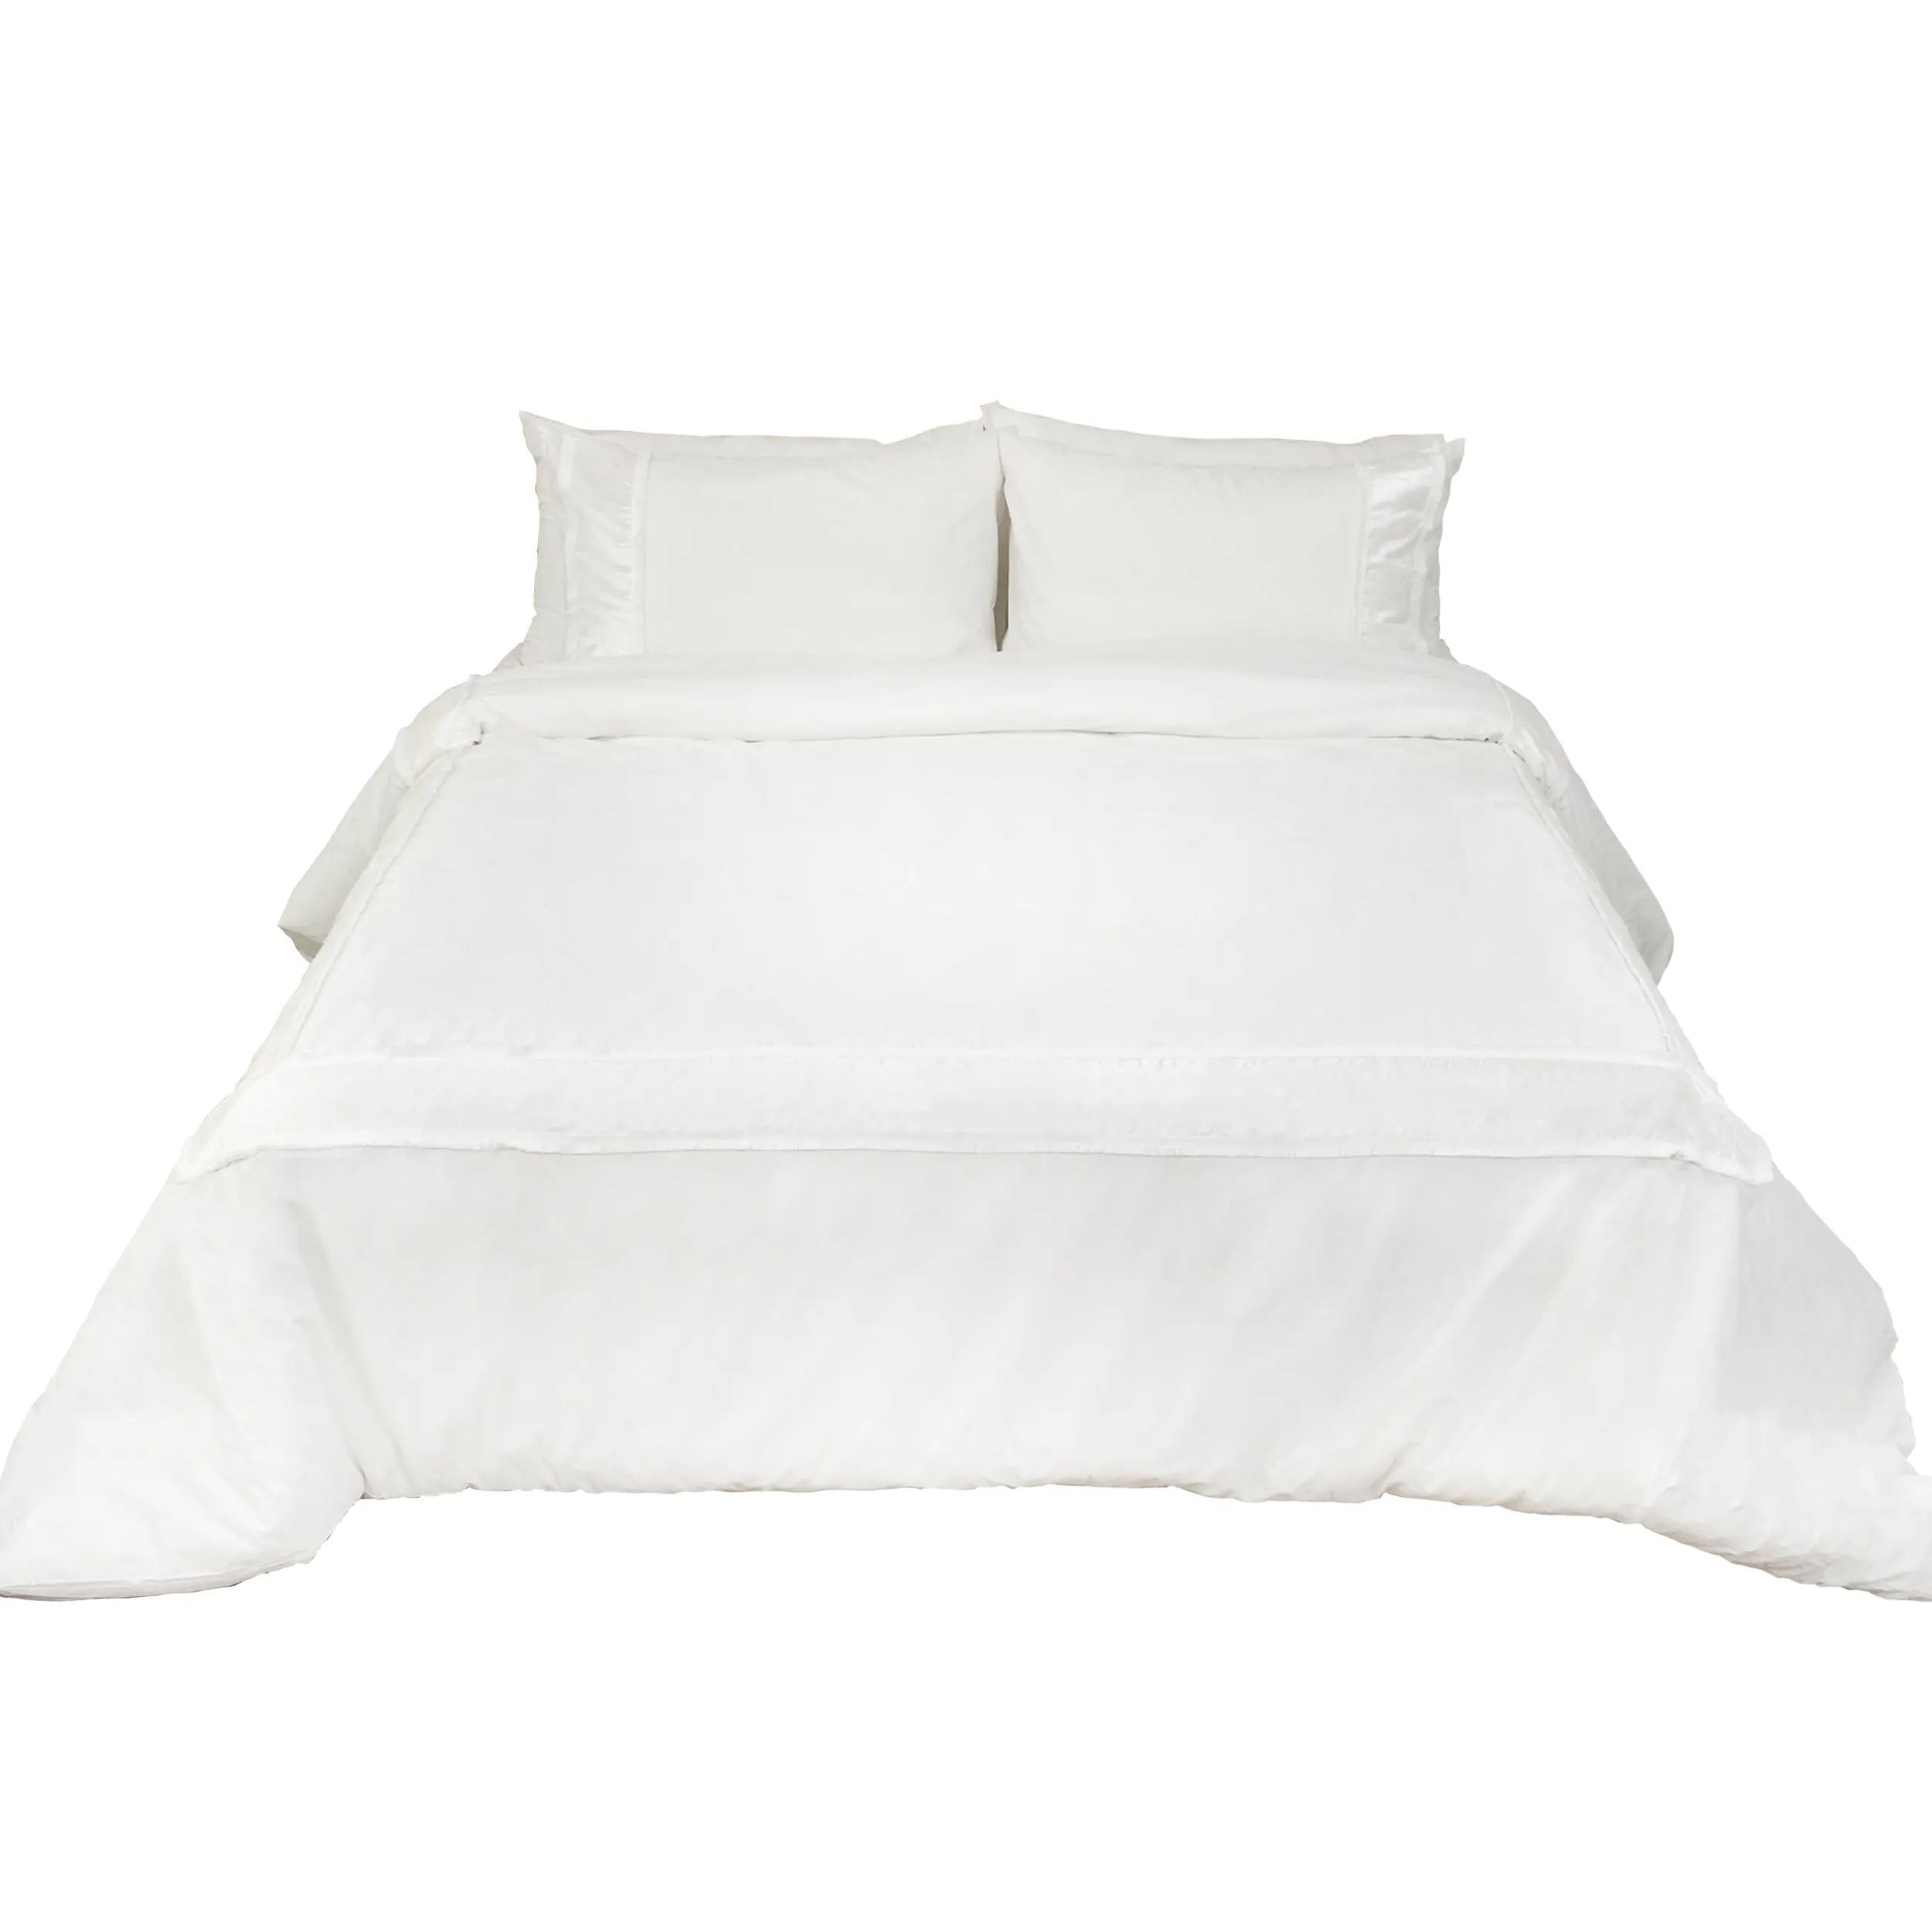 कपास चादरें 100% कपास सफेद कम कीमत Bedsheets राजा आकार 100% कपास चादरें